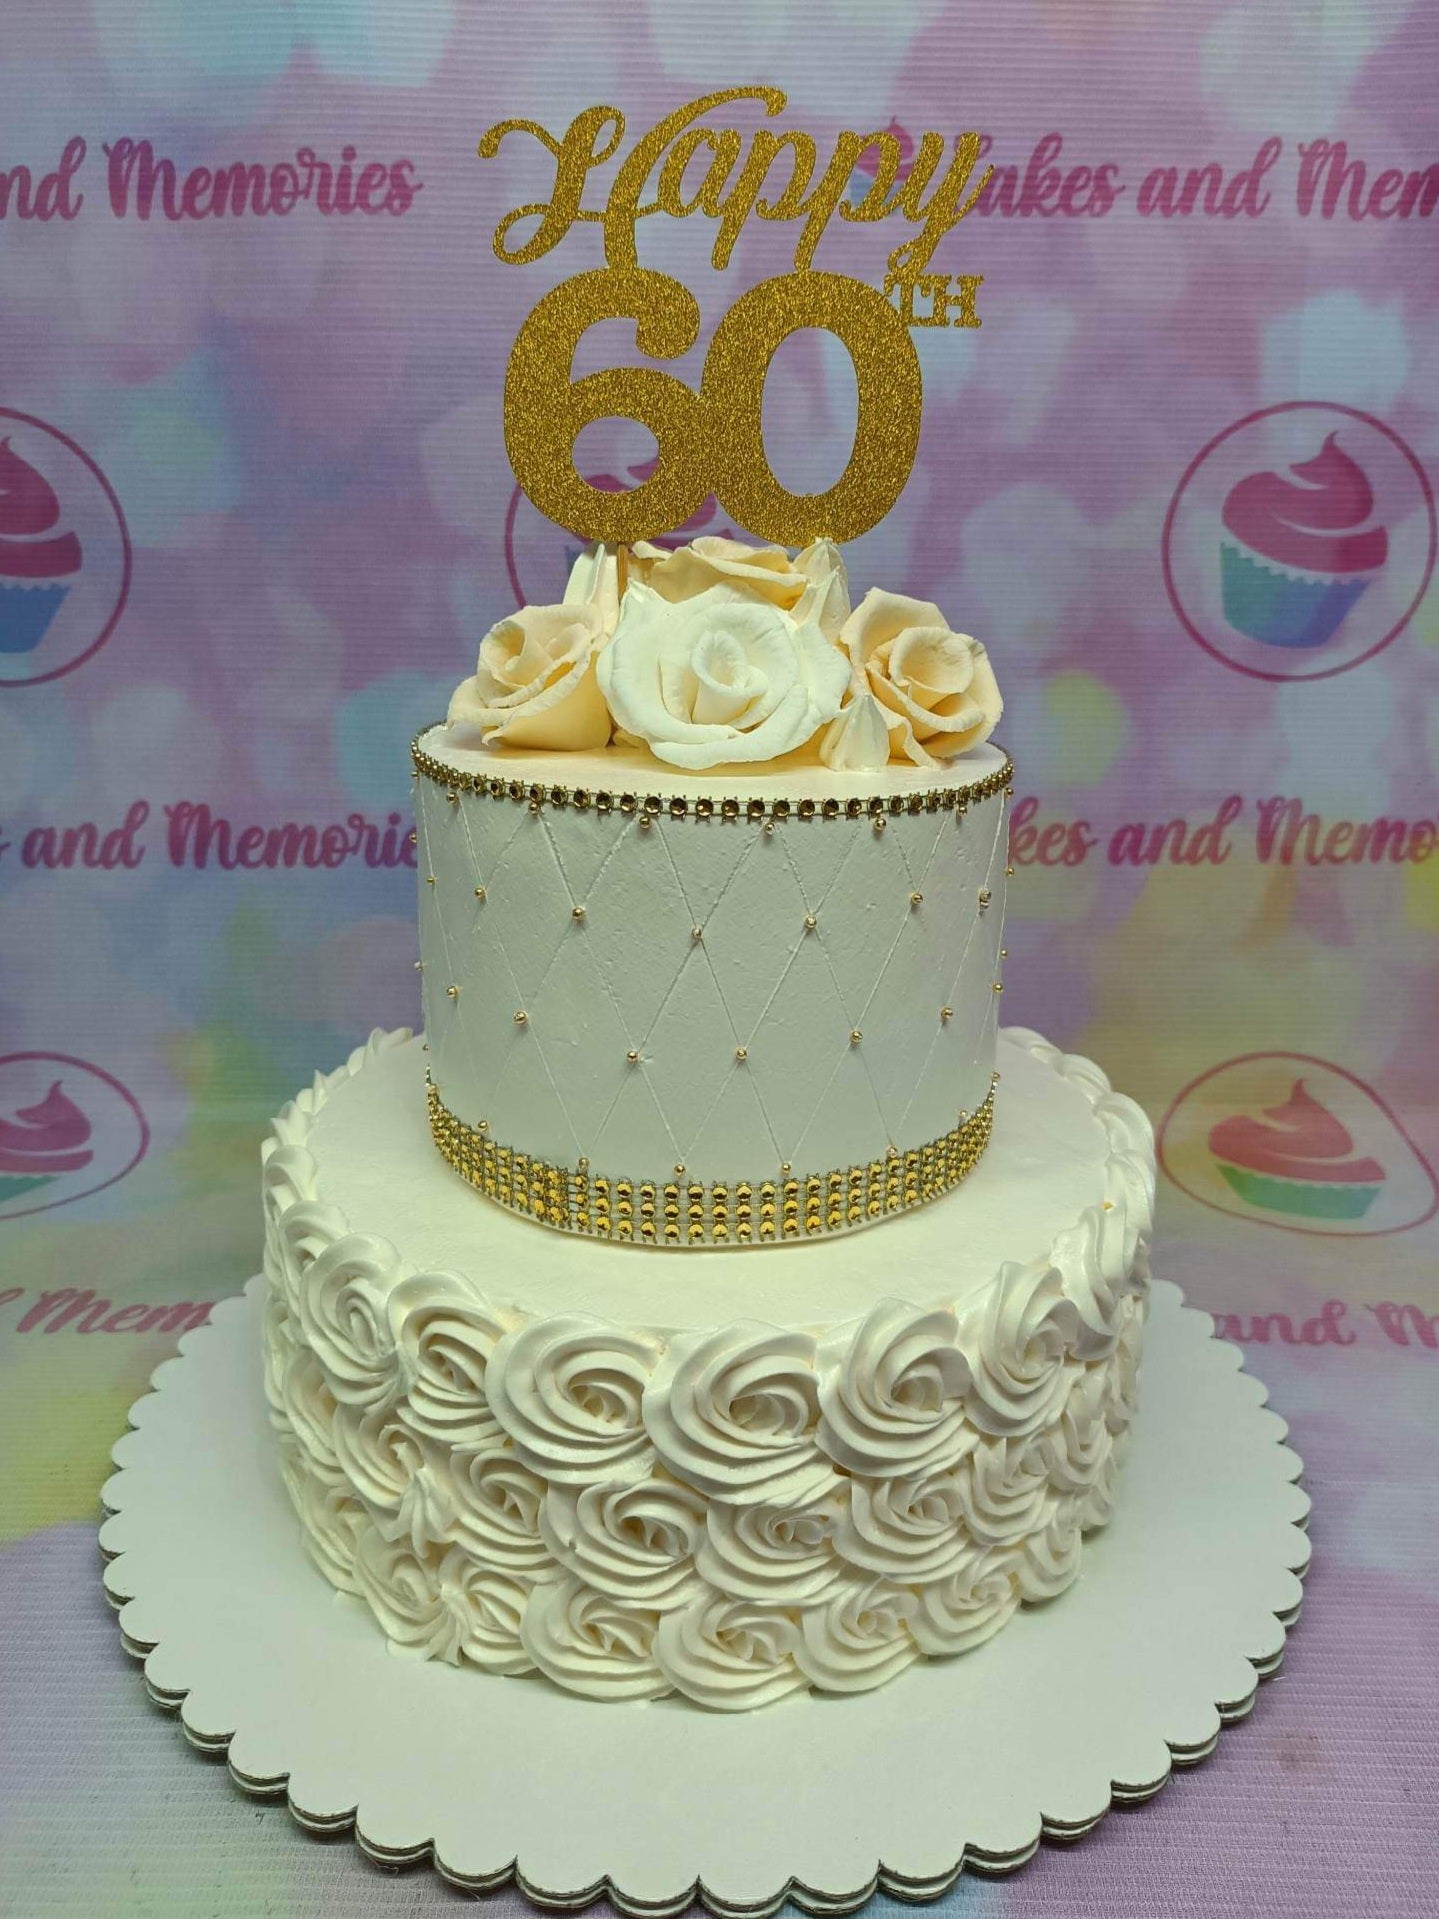 Happy 60th Birthday Mum Glitter Cake Topper for 60th Birthday - Etsy